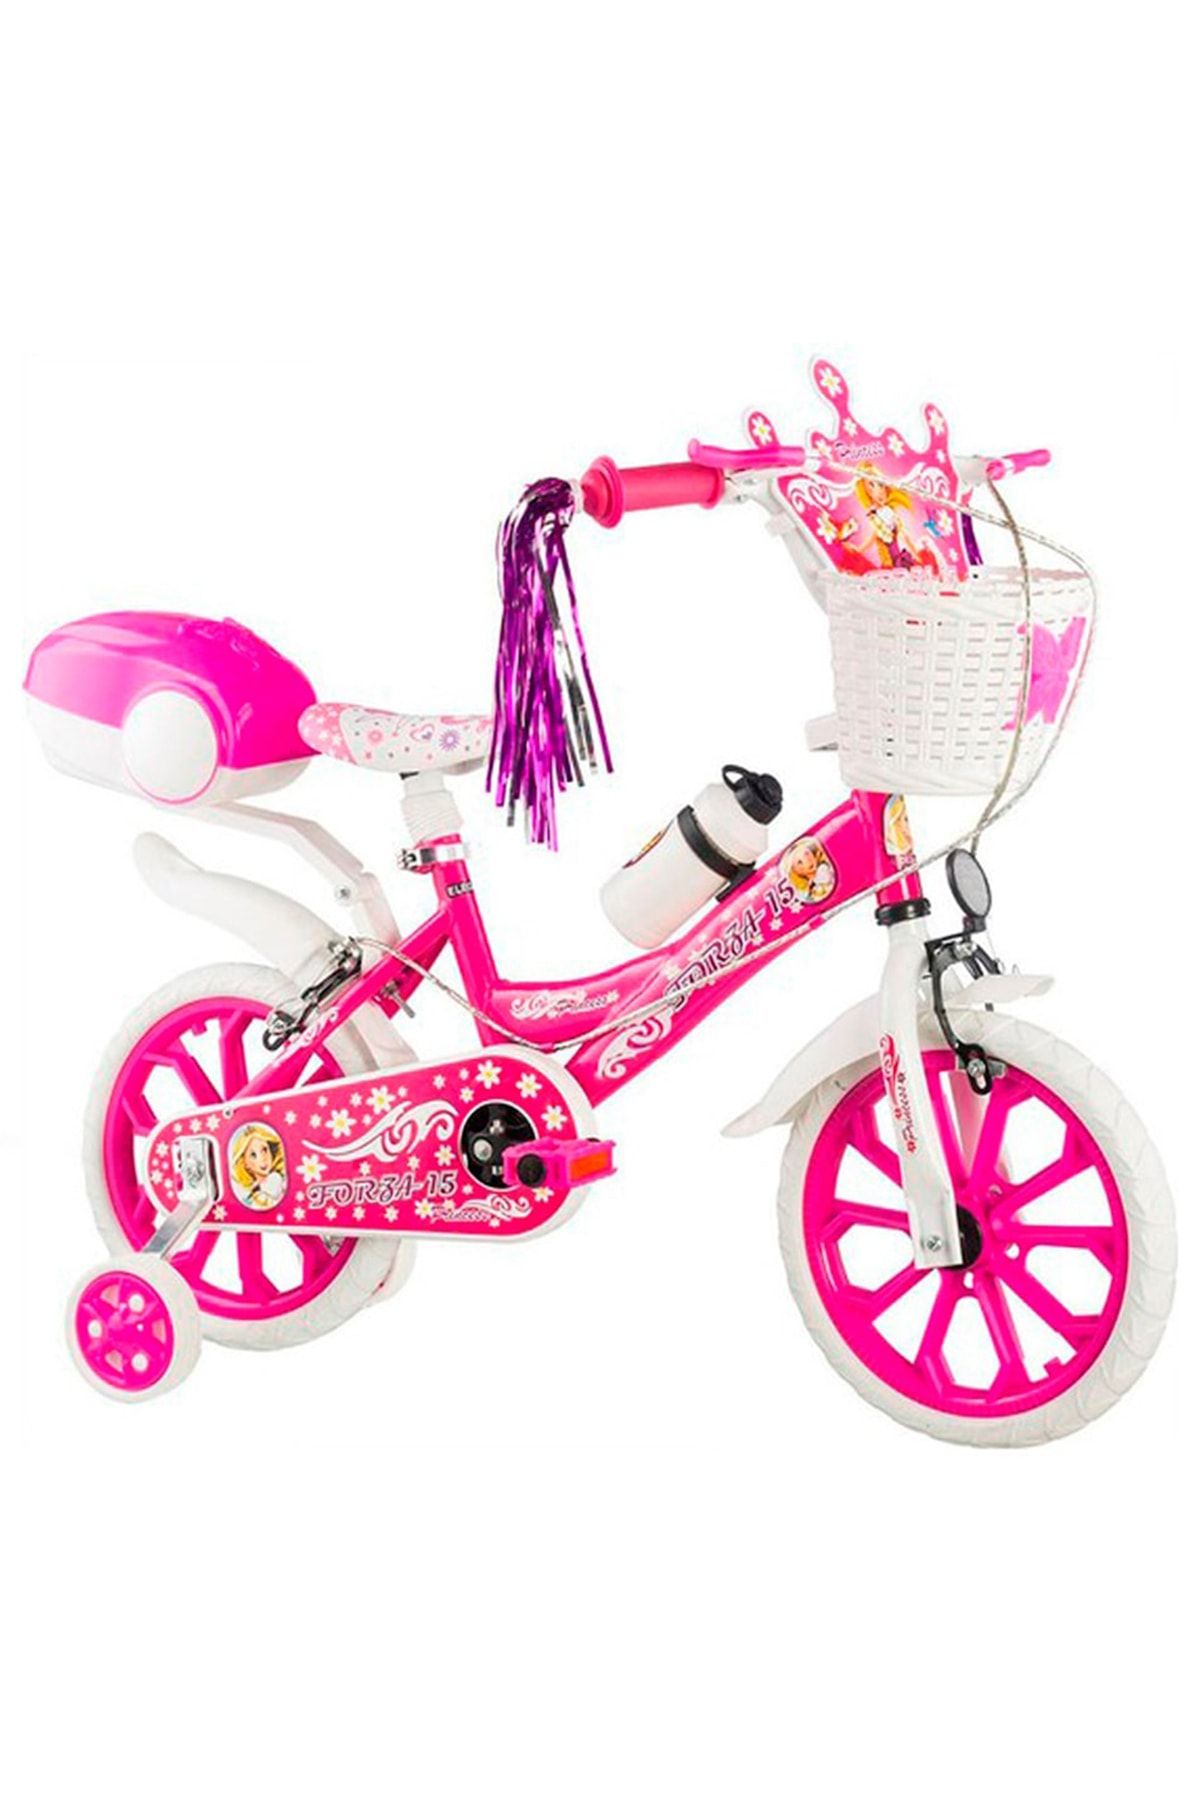 Holly 15 Jant Forza Çocuk Bisikleti 4-5-6-7 Yaş Için Pembe Bisiklet